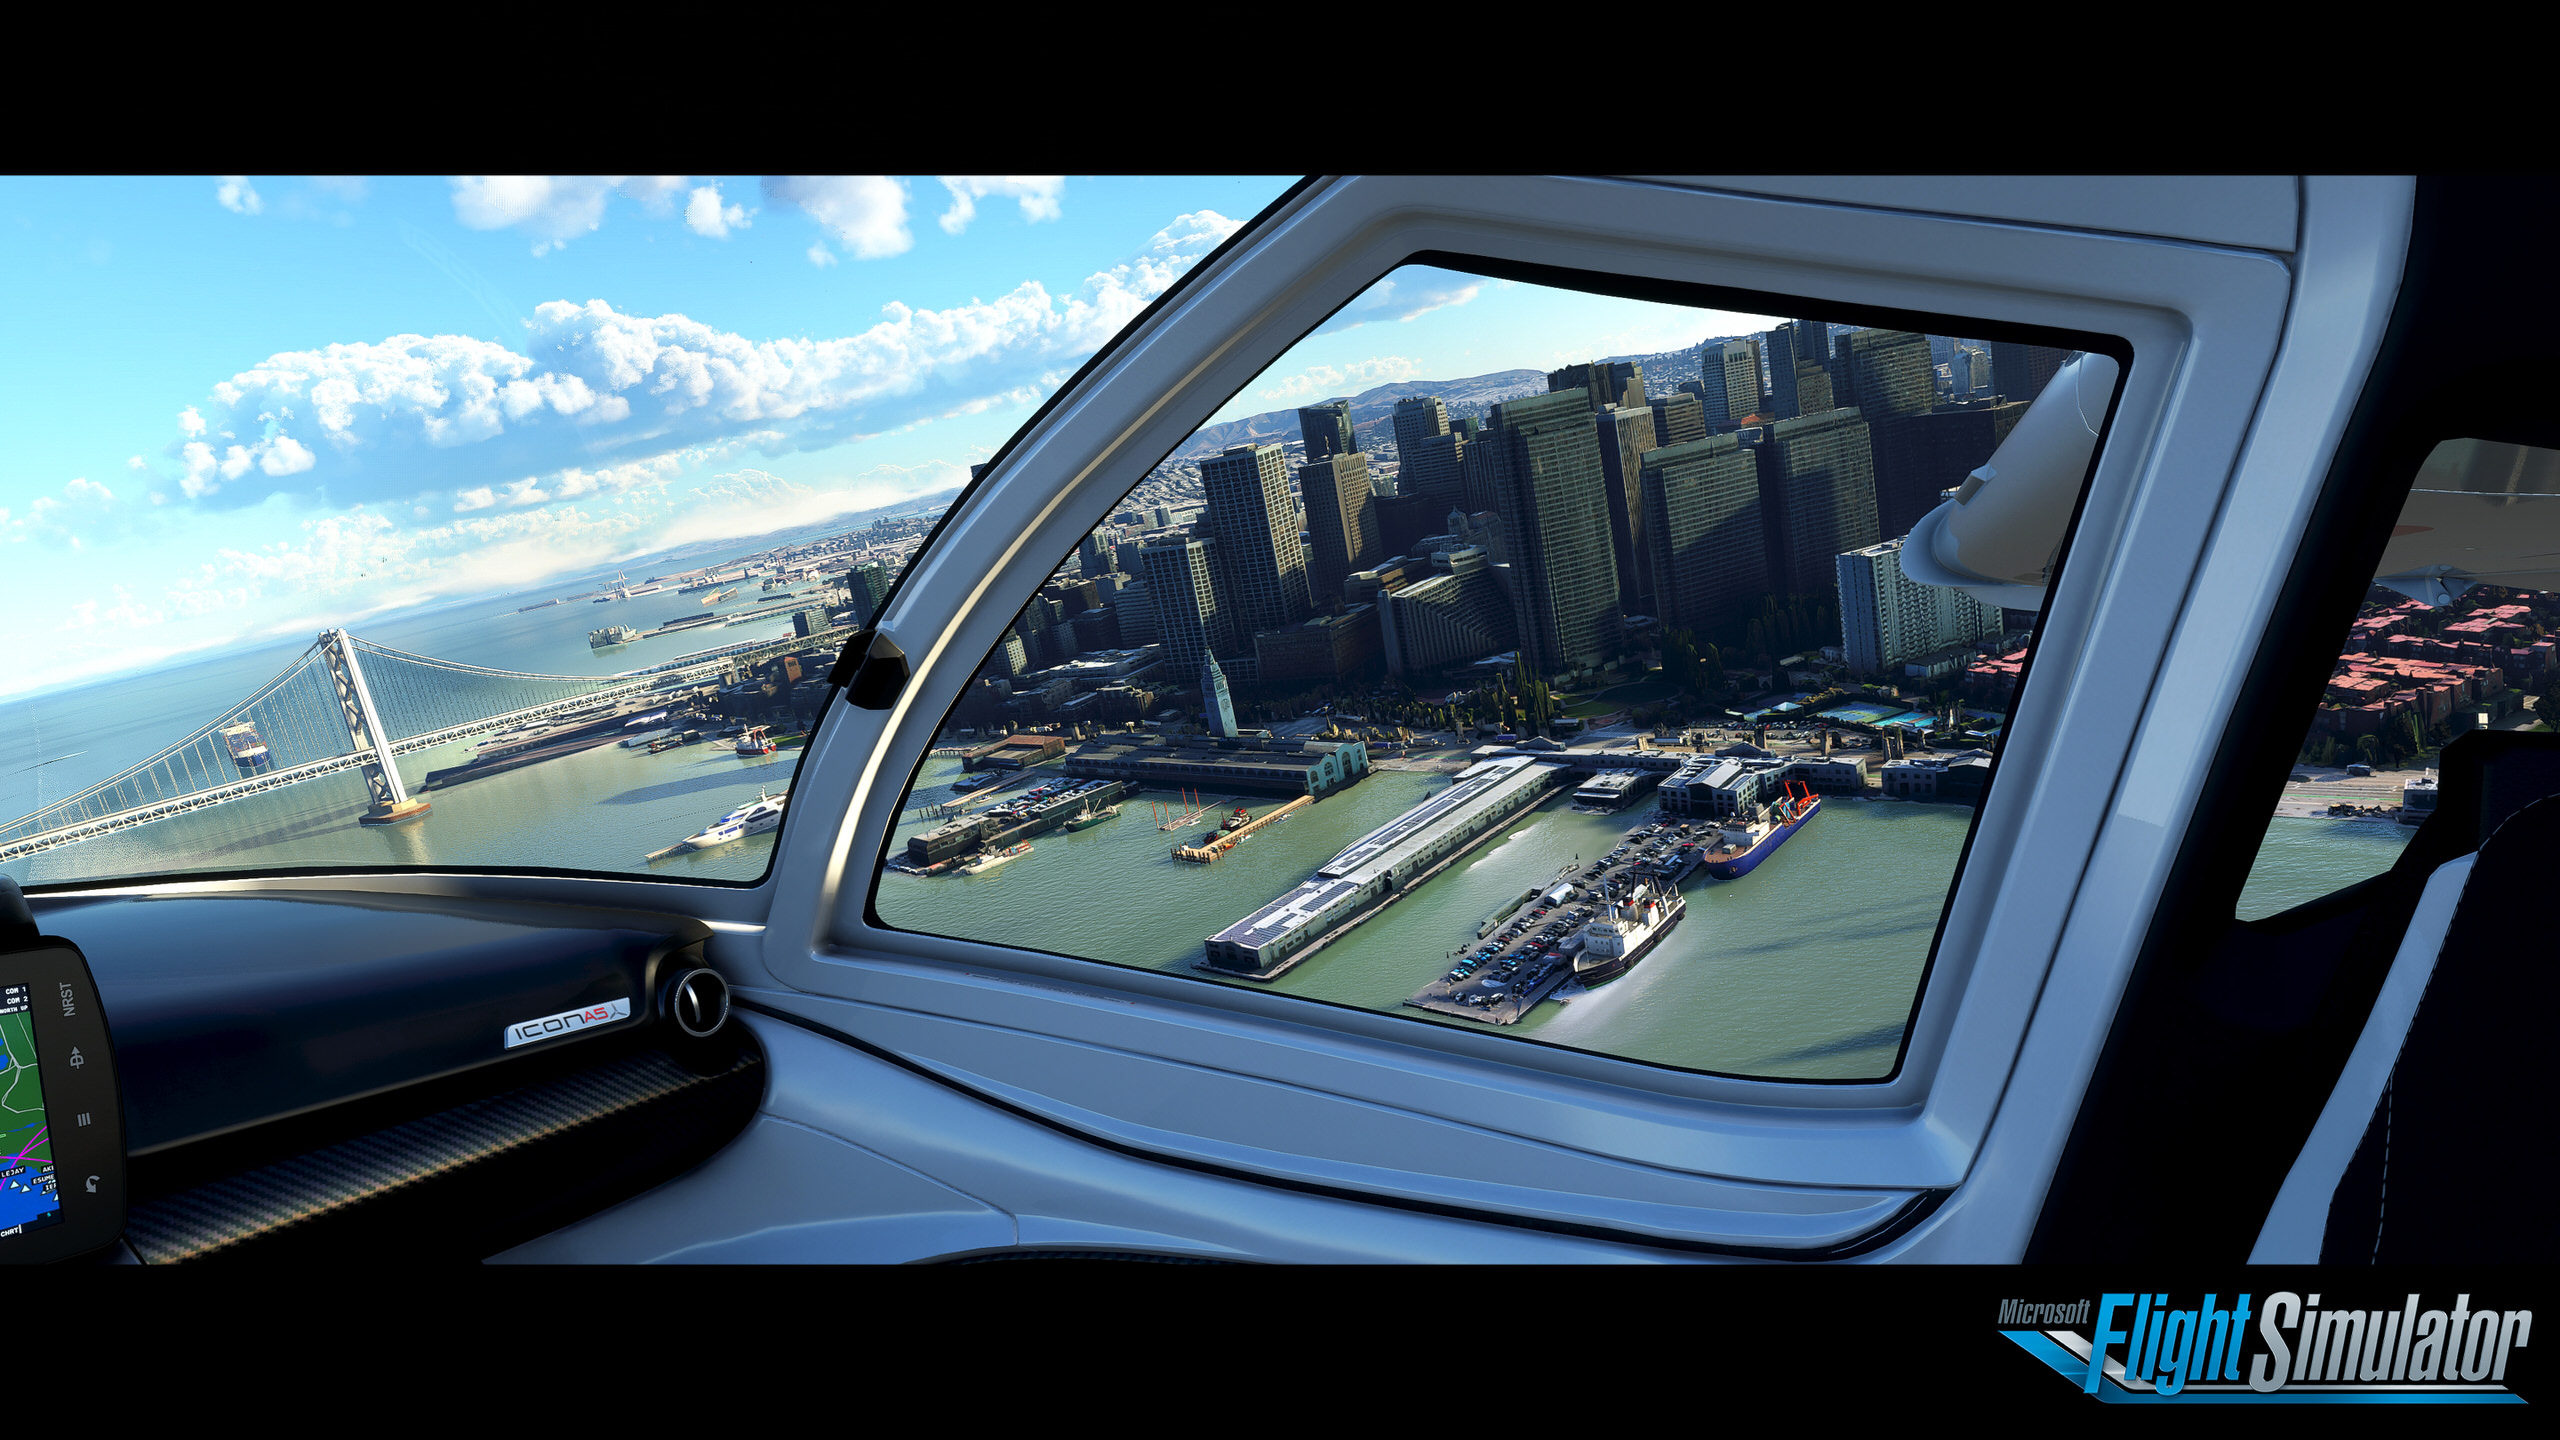 Nhà phát triển game Flight Simulator giới thiệu và giải thích tính năng thế giới chung trong chế độ chơi online